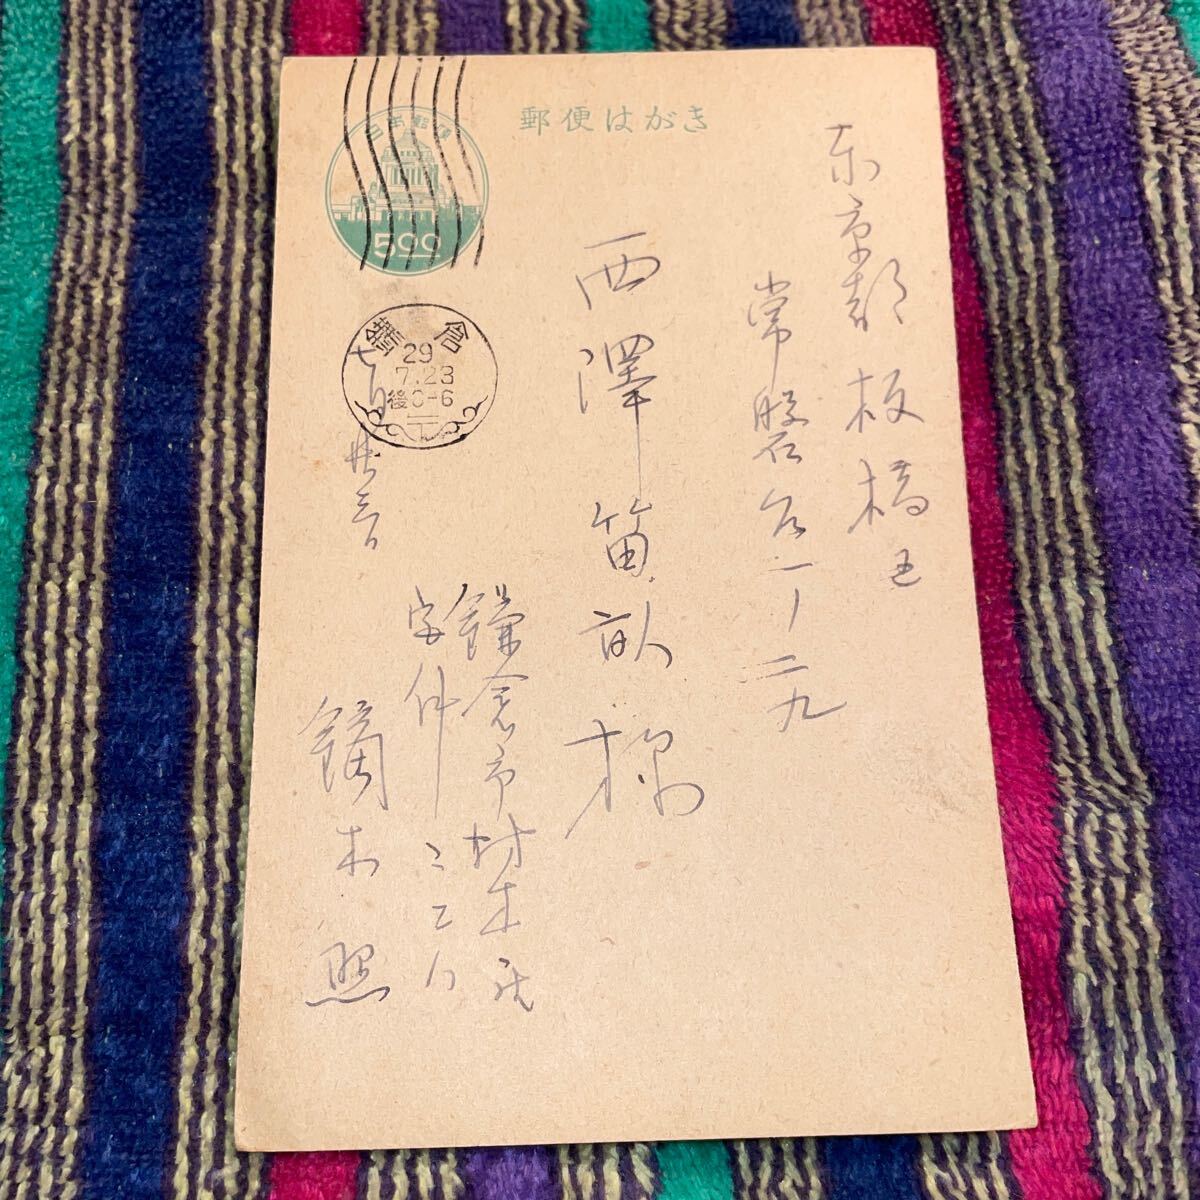 От жены Киёката Кабураги (Теру), Фуэне Нисидзава (известный исследователь кукол), Это открытка для коллекционеров.Открытка, рисование, картина маслом, другие